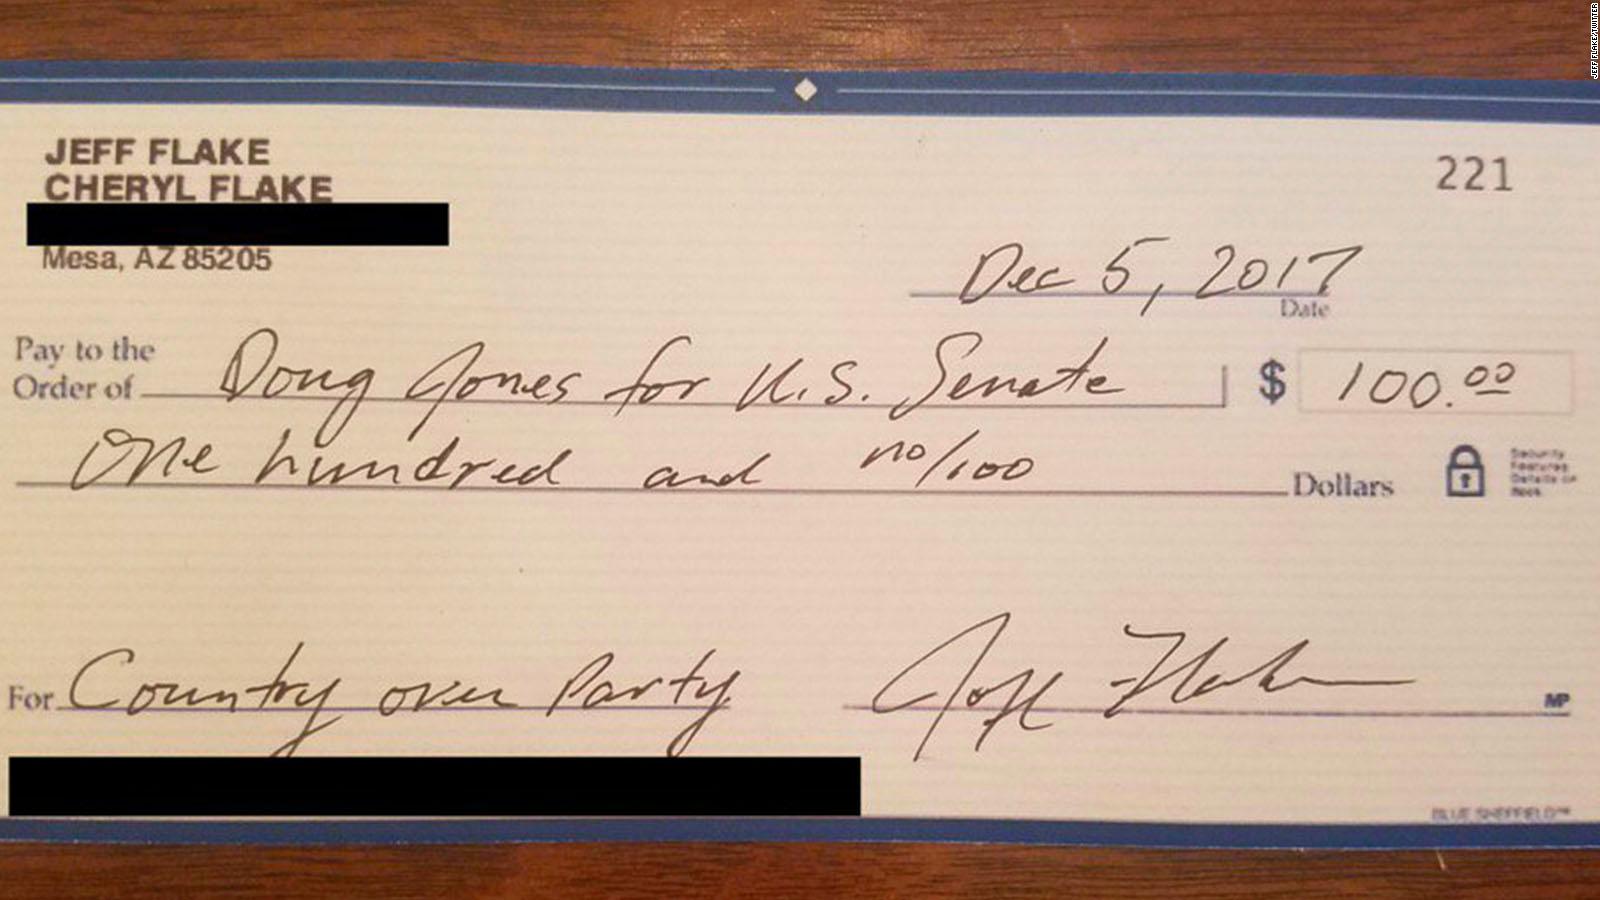 Flake writes check to Democrat opposing Moore